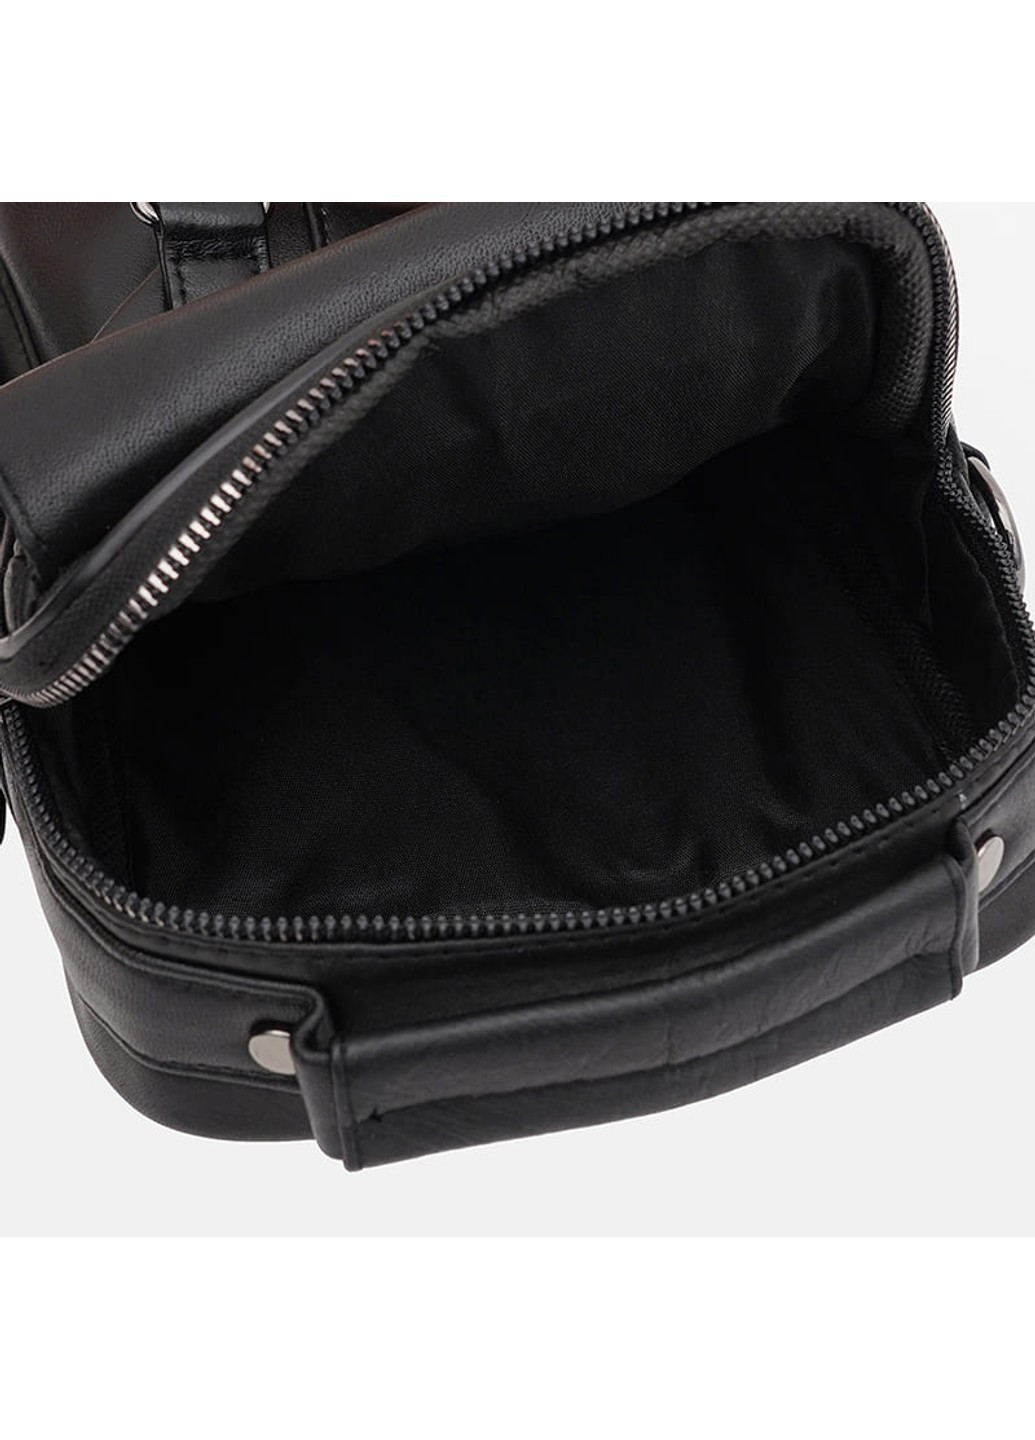 Мужская кожаная сумка T1DLUX1bl-black Ricco Grande (267146337)